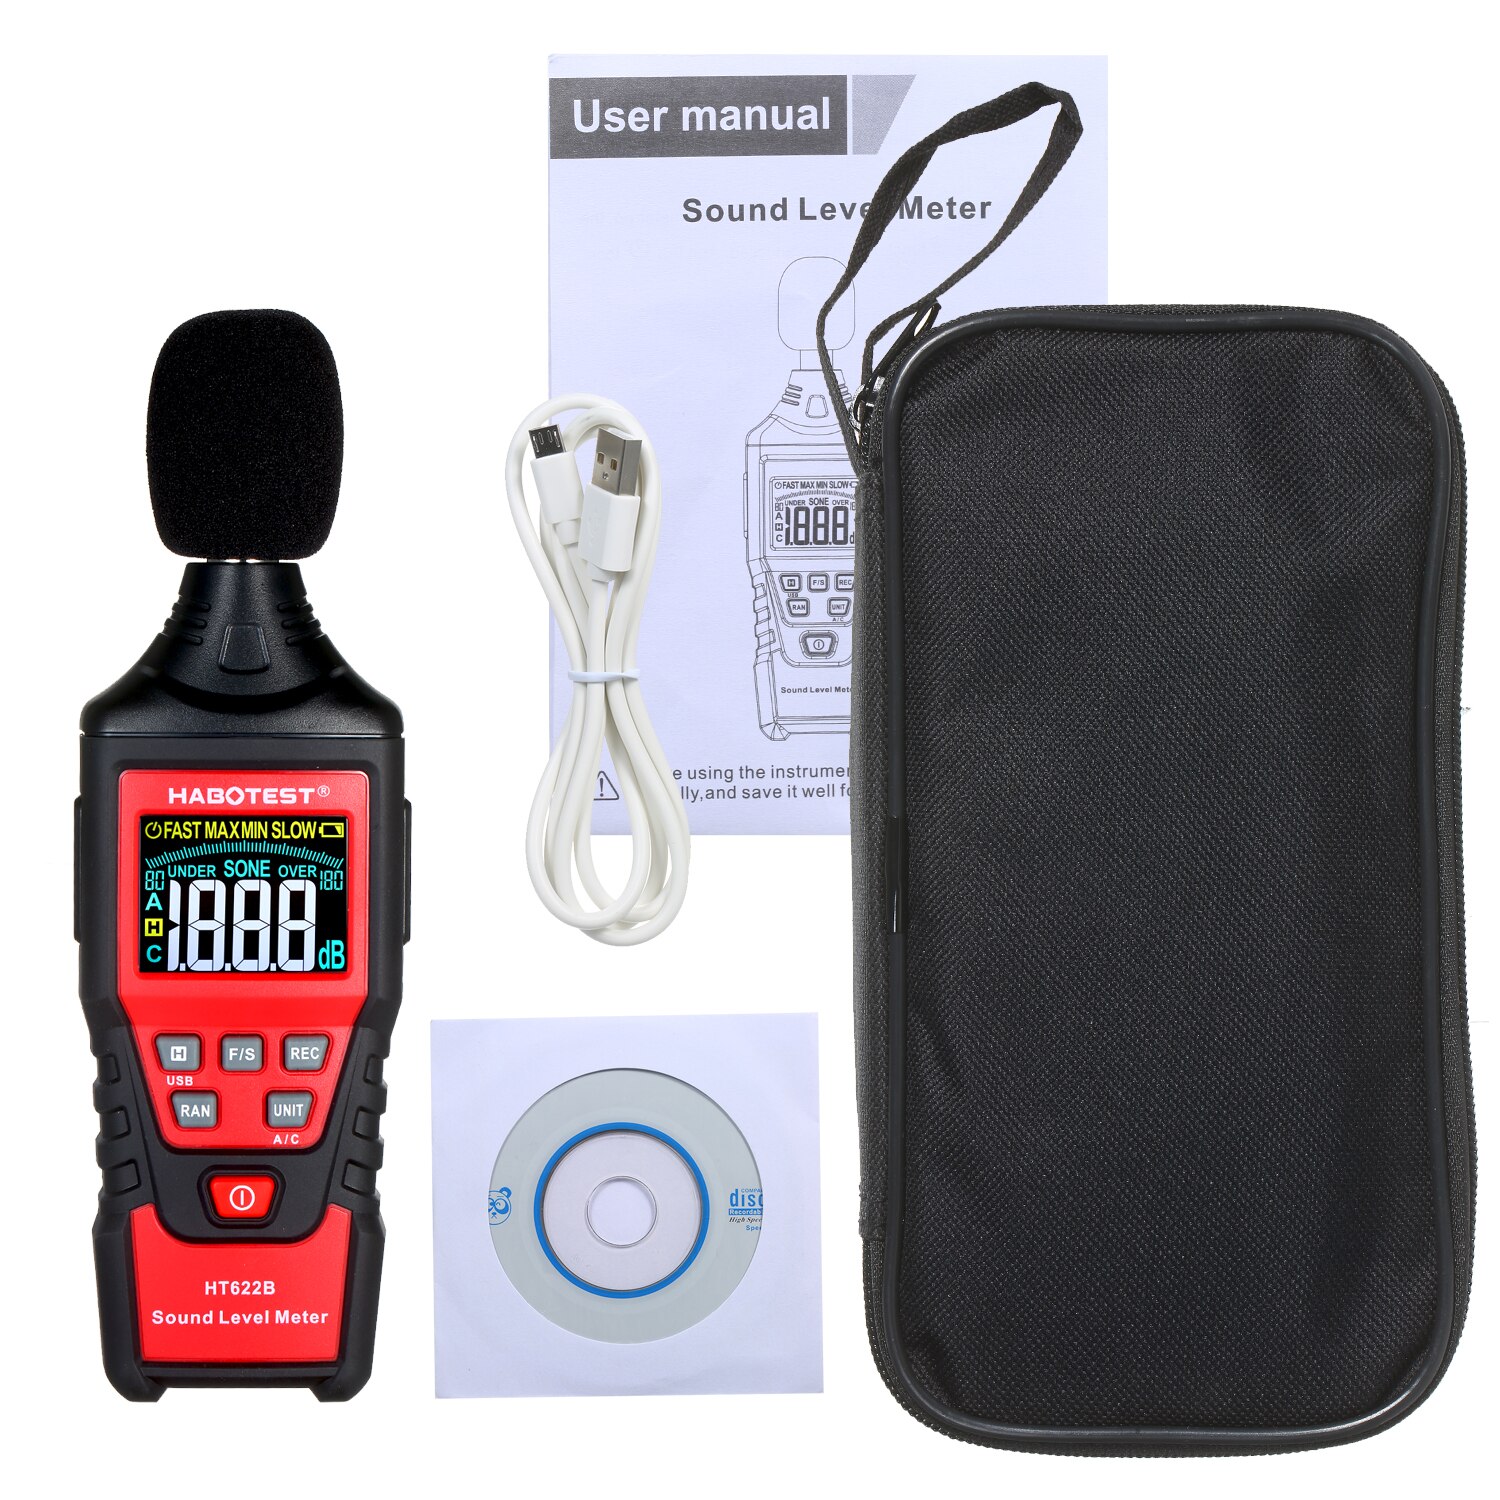 HT622B Digitale Decibelmeter Met Usb-poort A/C Gewogen Sound Level Meter Lcd-kleurenscherm Noise Sound Detector